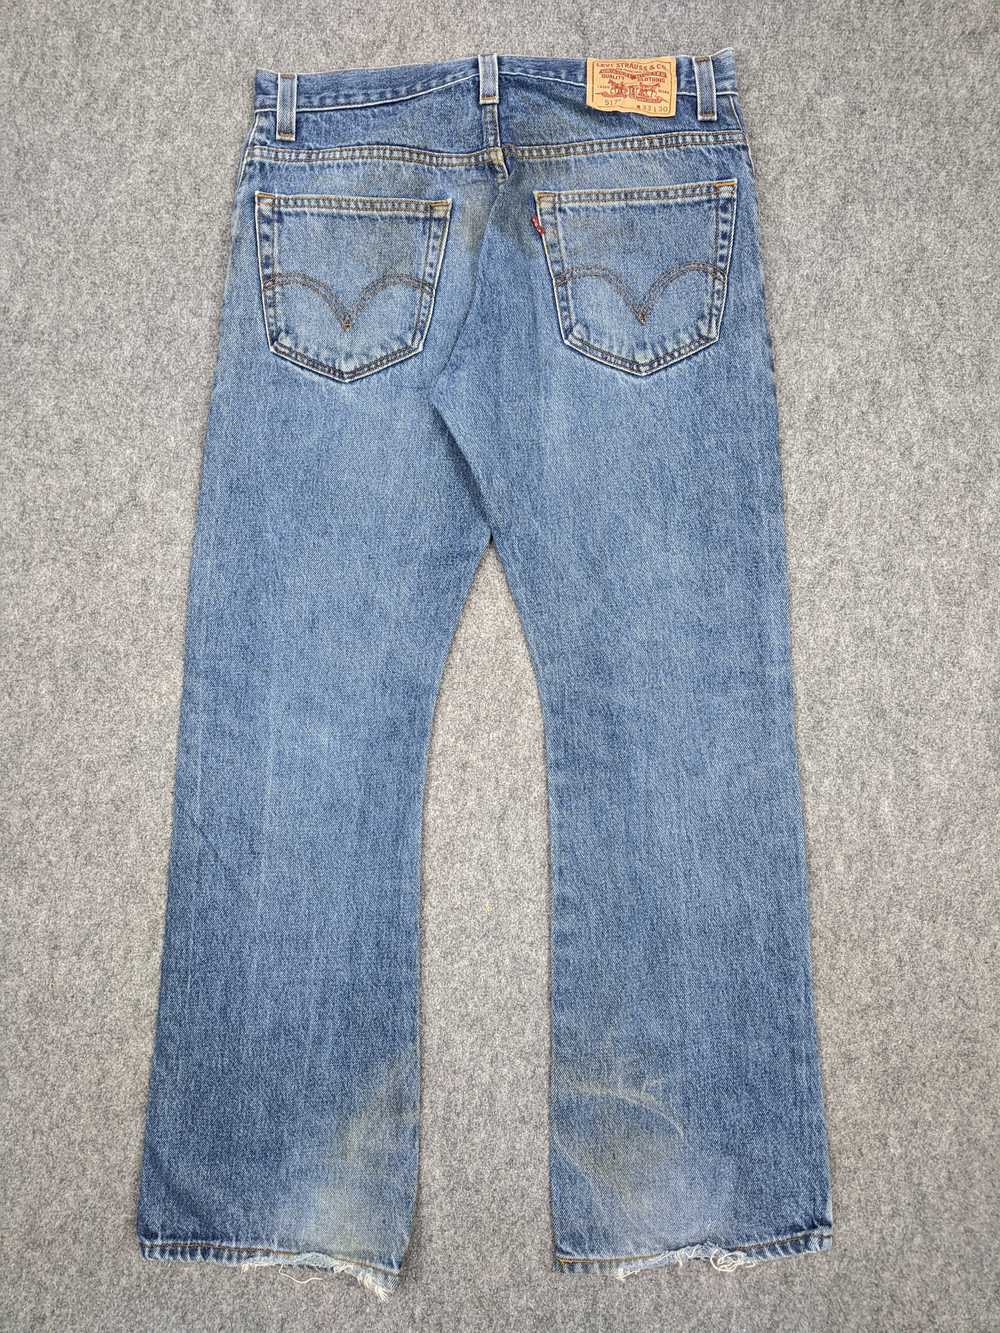 Vintage - Vintage Levis 517 Flared Bootcut Jeans - image 3